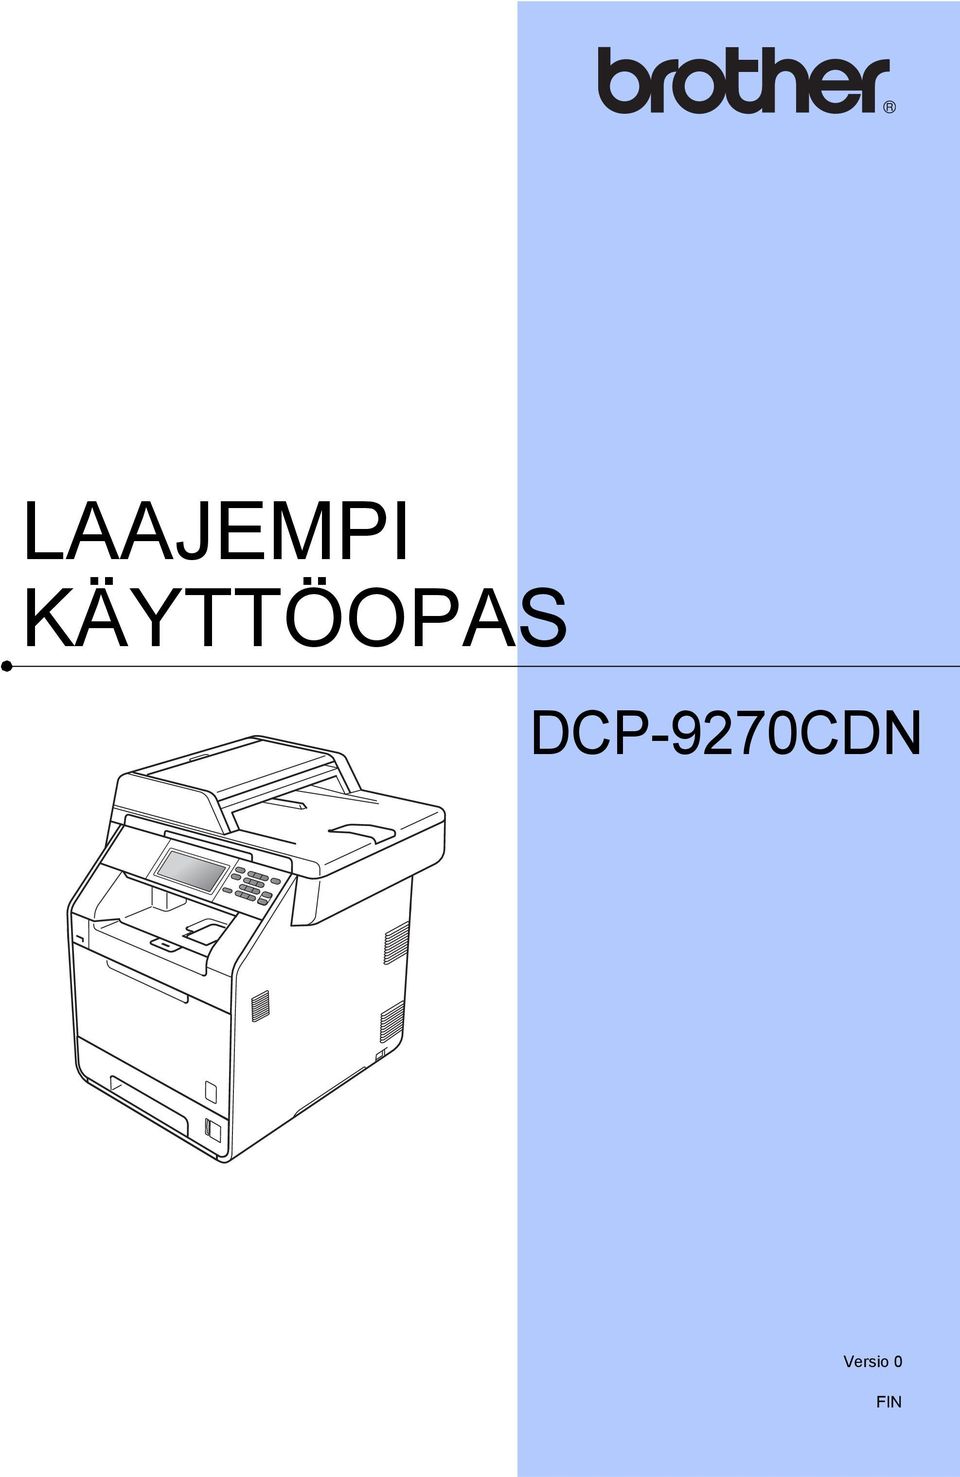 DCP-970CDN